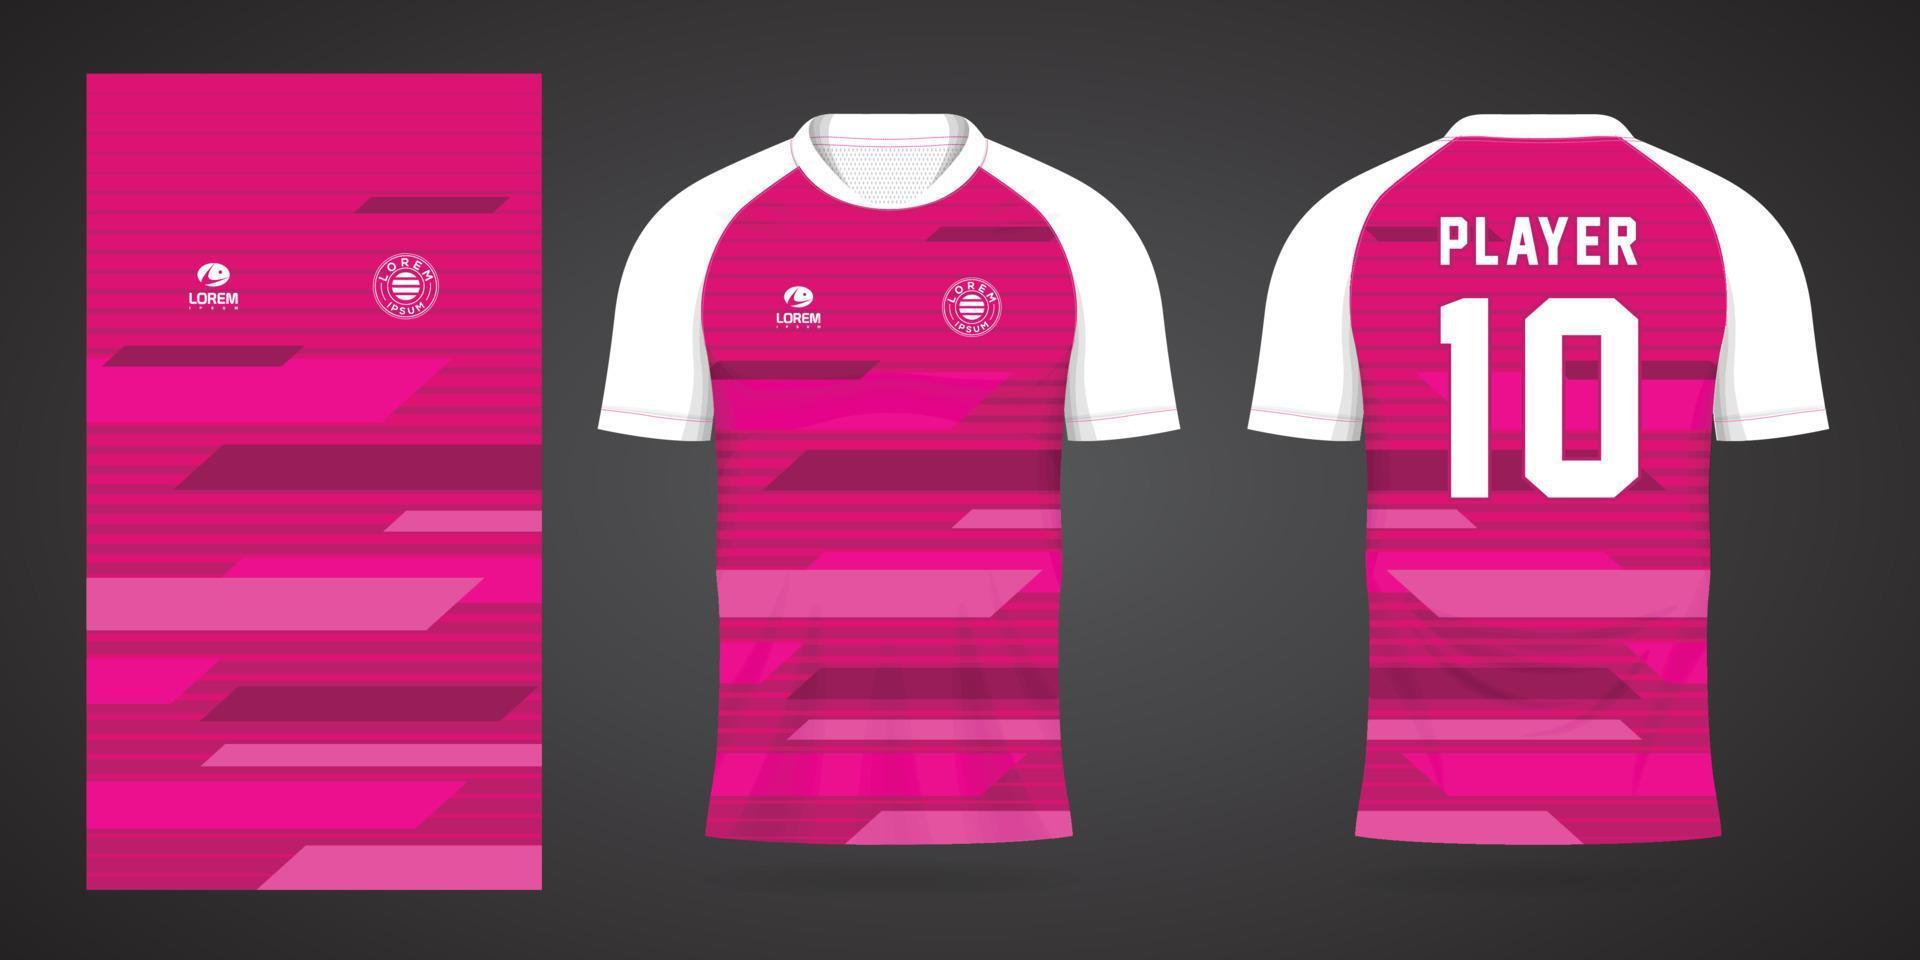 modello di design sportivo maglia rosa calcio vettore